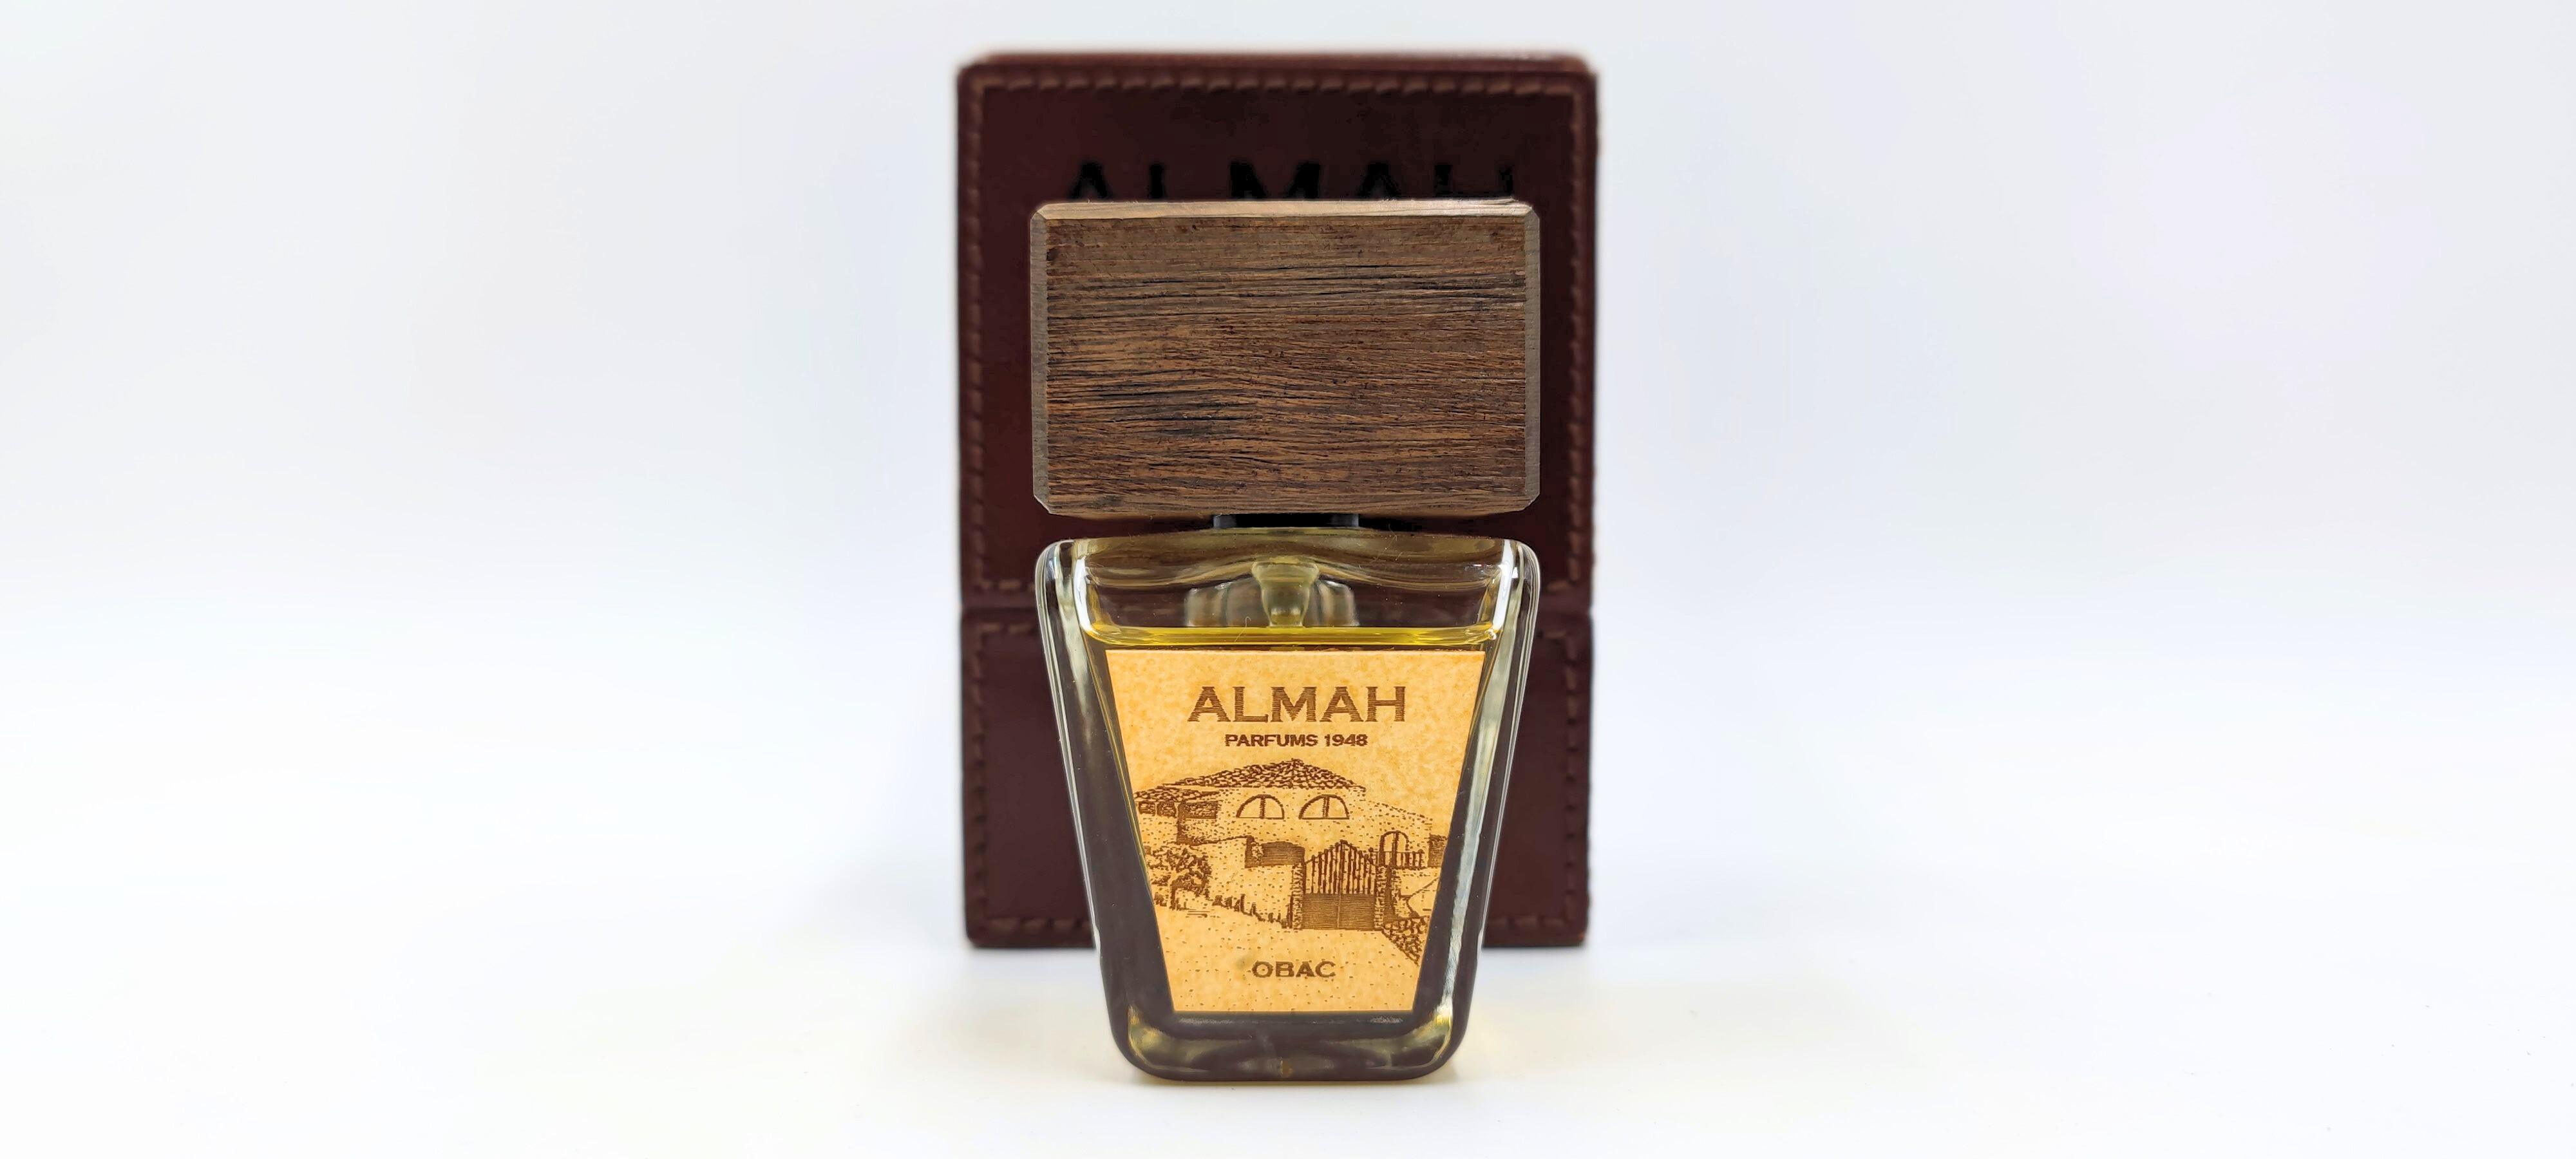 Clos de l'Obac y Almah Parfums 1948 crean el primer perfume "Bouquet"